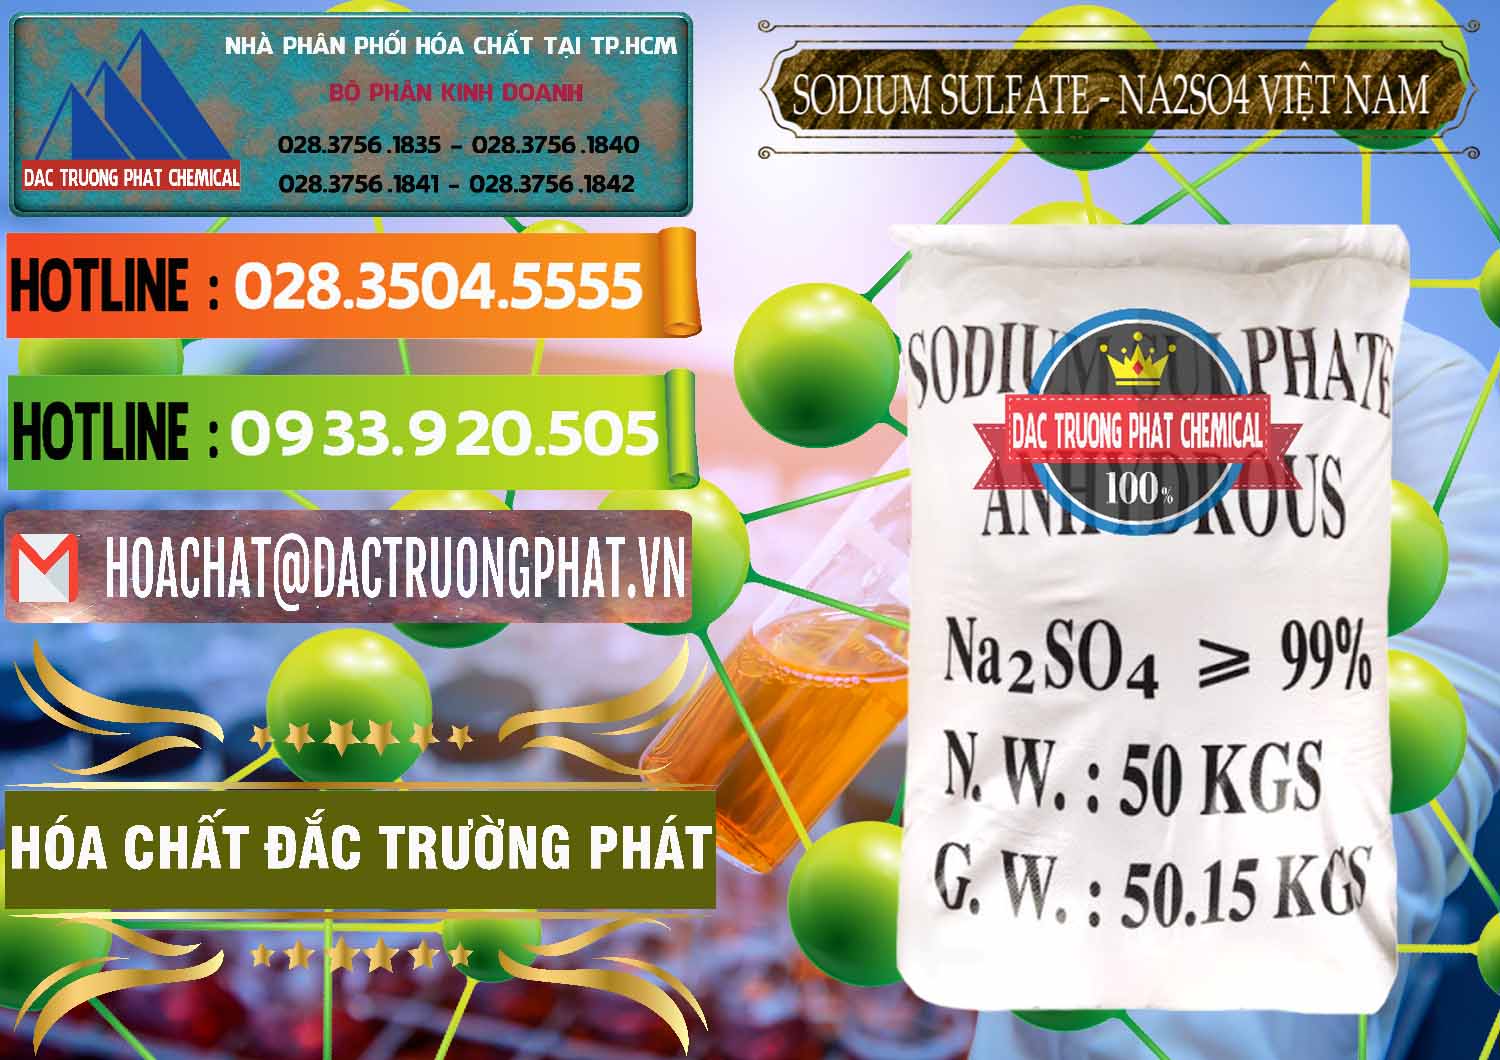 Đơn vị chuyên cung ứng _ phân phối Sodium Sulphate - Muối Sunfat Na2SO4 Việt Nam - 0355 - Nơi chuyên bán & phân phối hóa chất tại TP.HCM - cungcaphoachat.com.vn